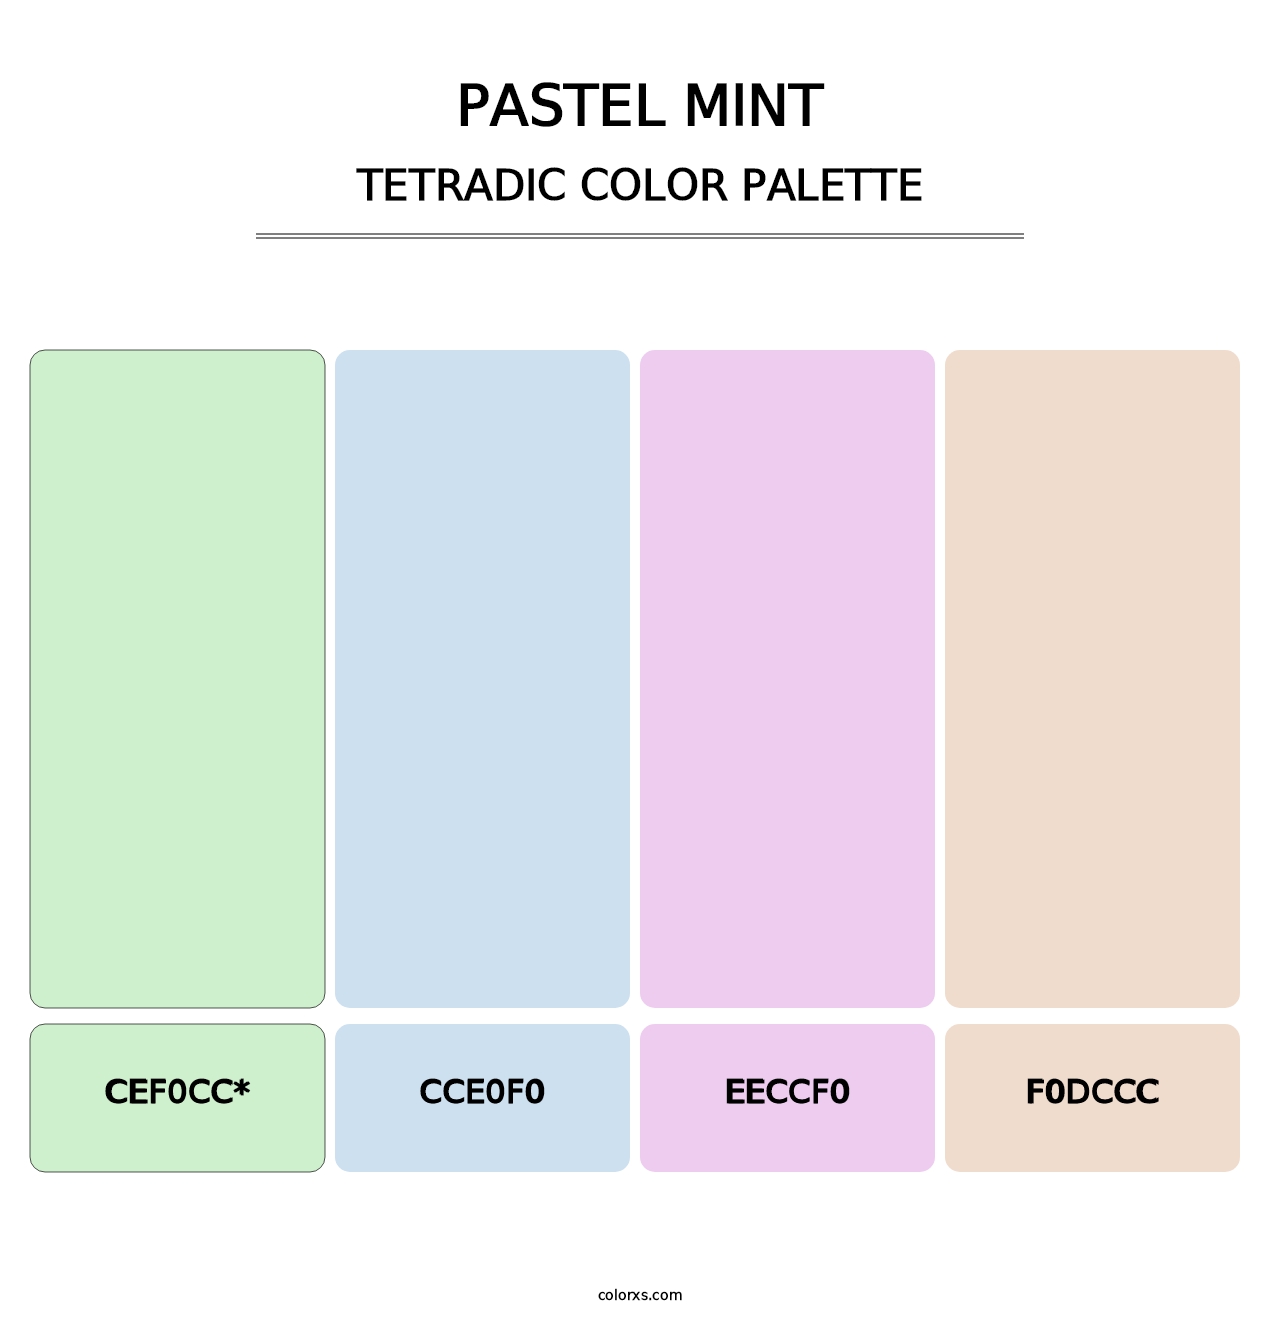 Pastel Mint - Tetradic Color Palette